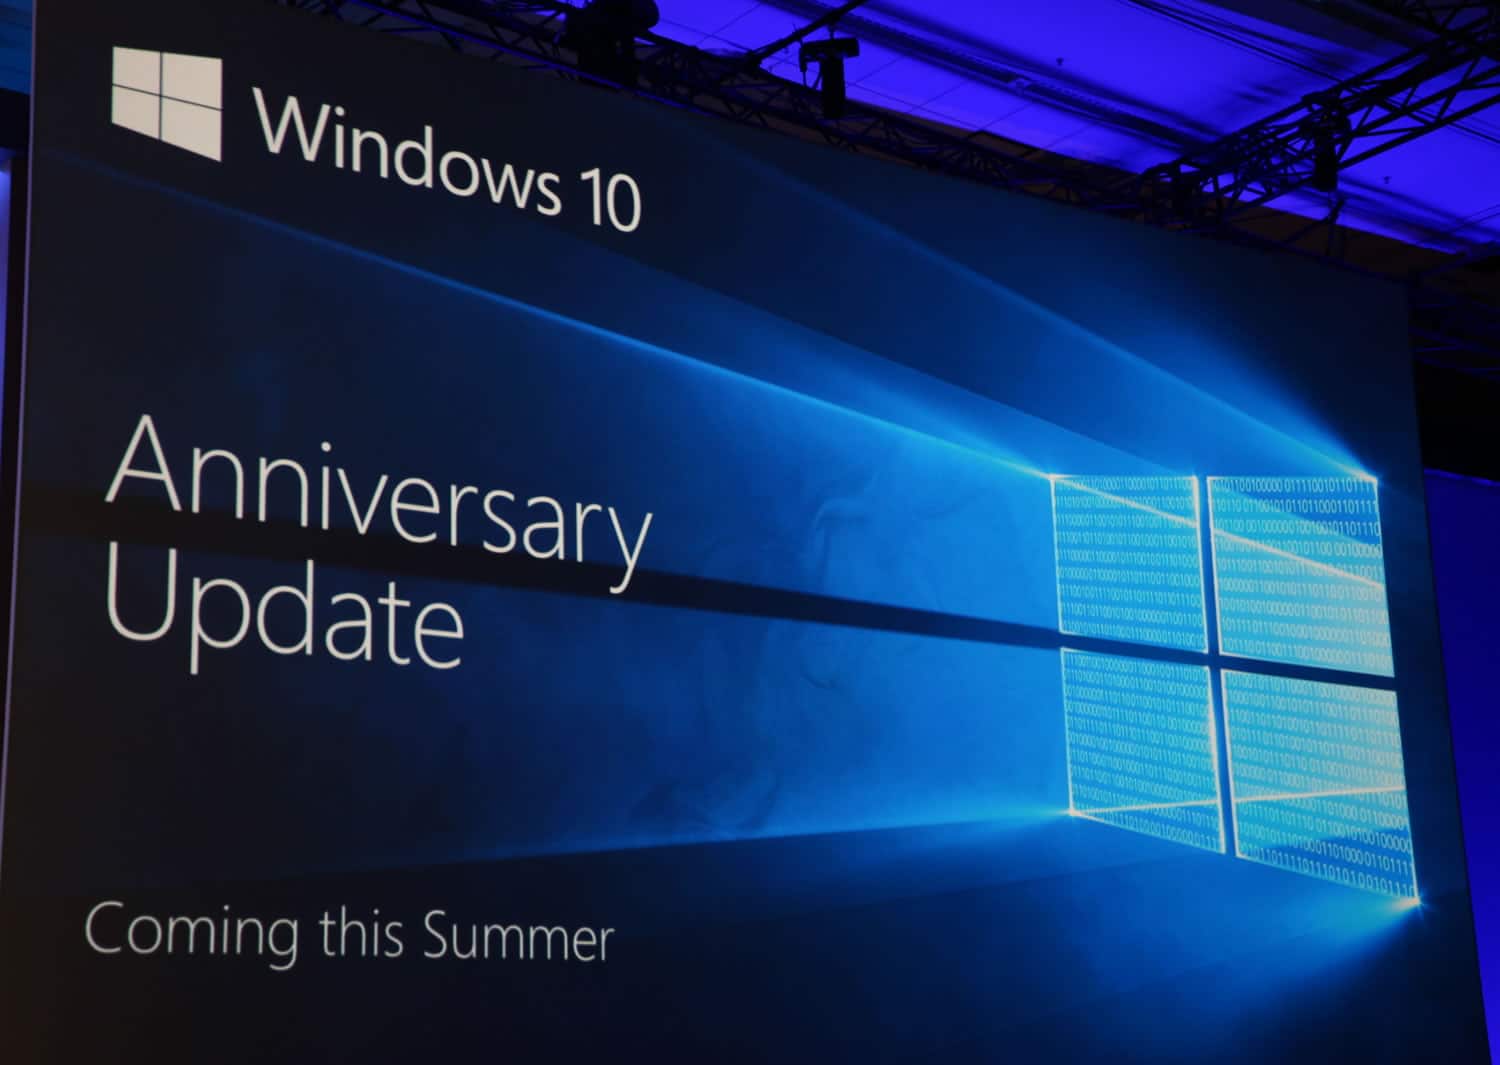 Windows 10 Anniversary Update